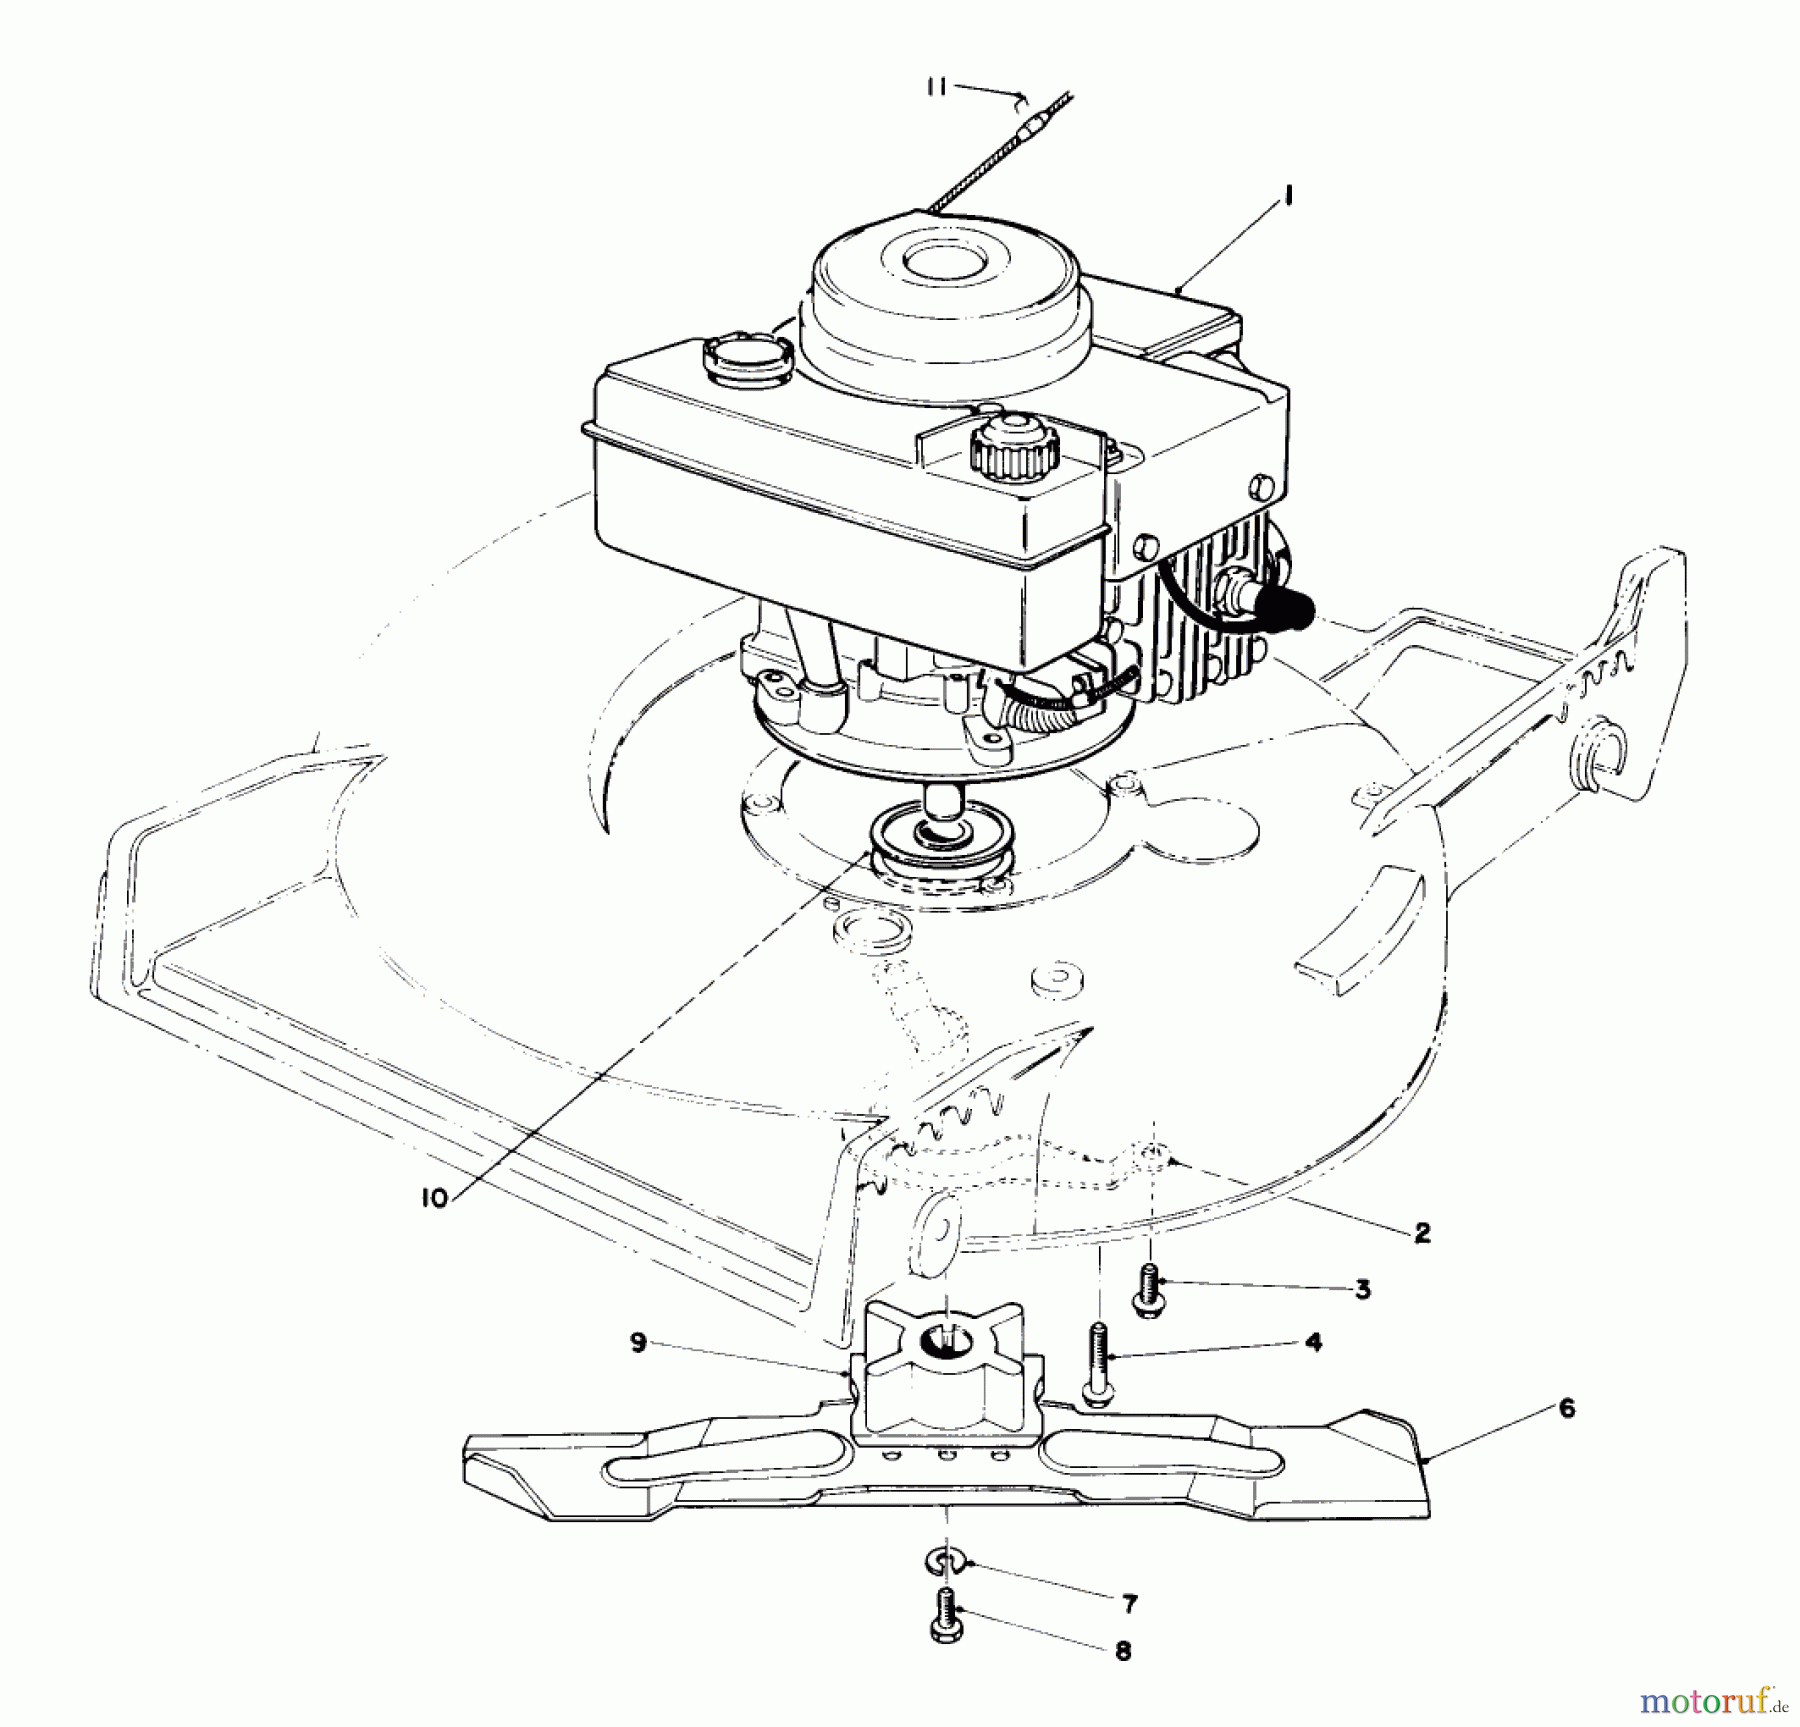  Toro Neu Mowers, Walk-Behind Seite 1 20692 - Toro Lawnmower, 1990 (0000001-0999999) ENGINE ASSEMBLY